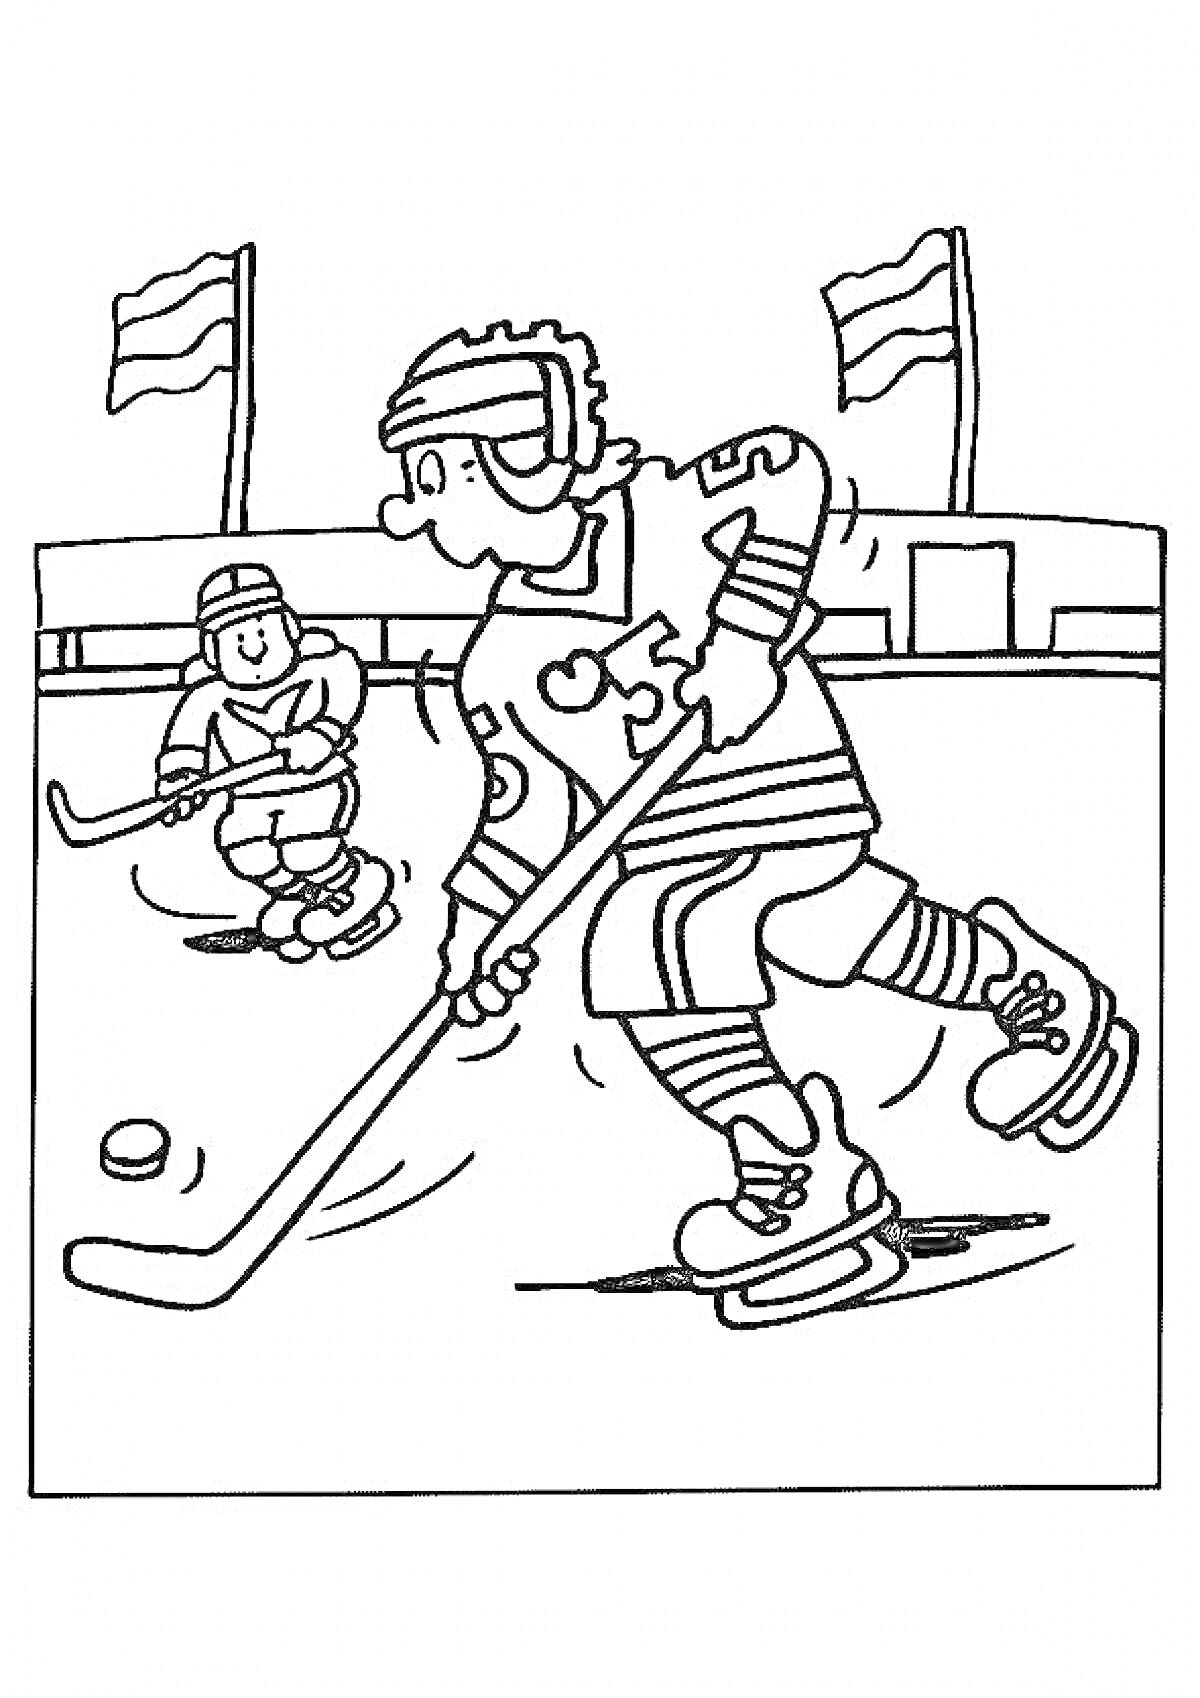 Раскраска Хоккей на льду для двоих играющих с клюшками и шайбой на фоне флагов